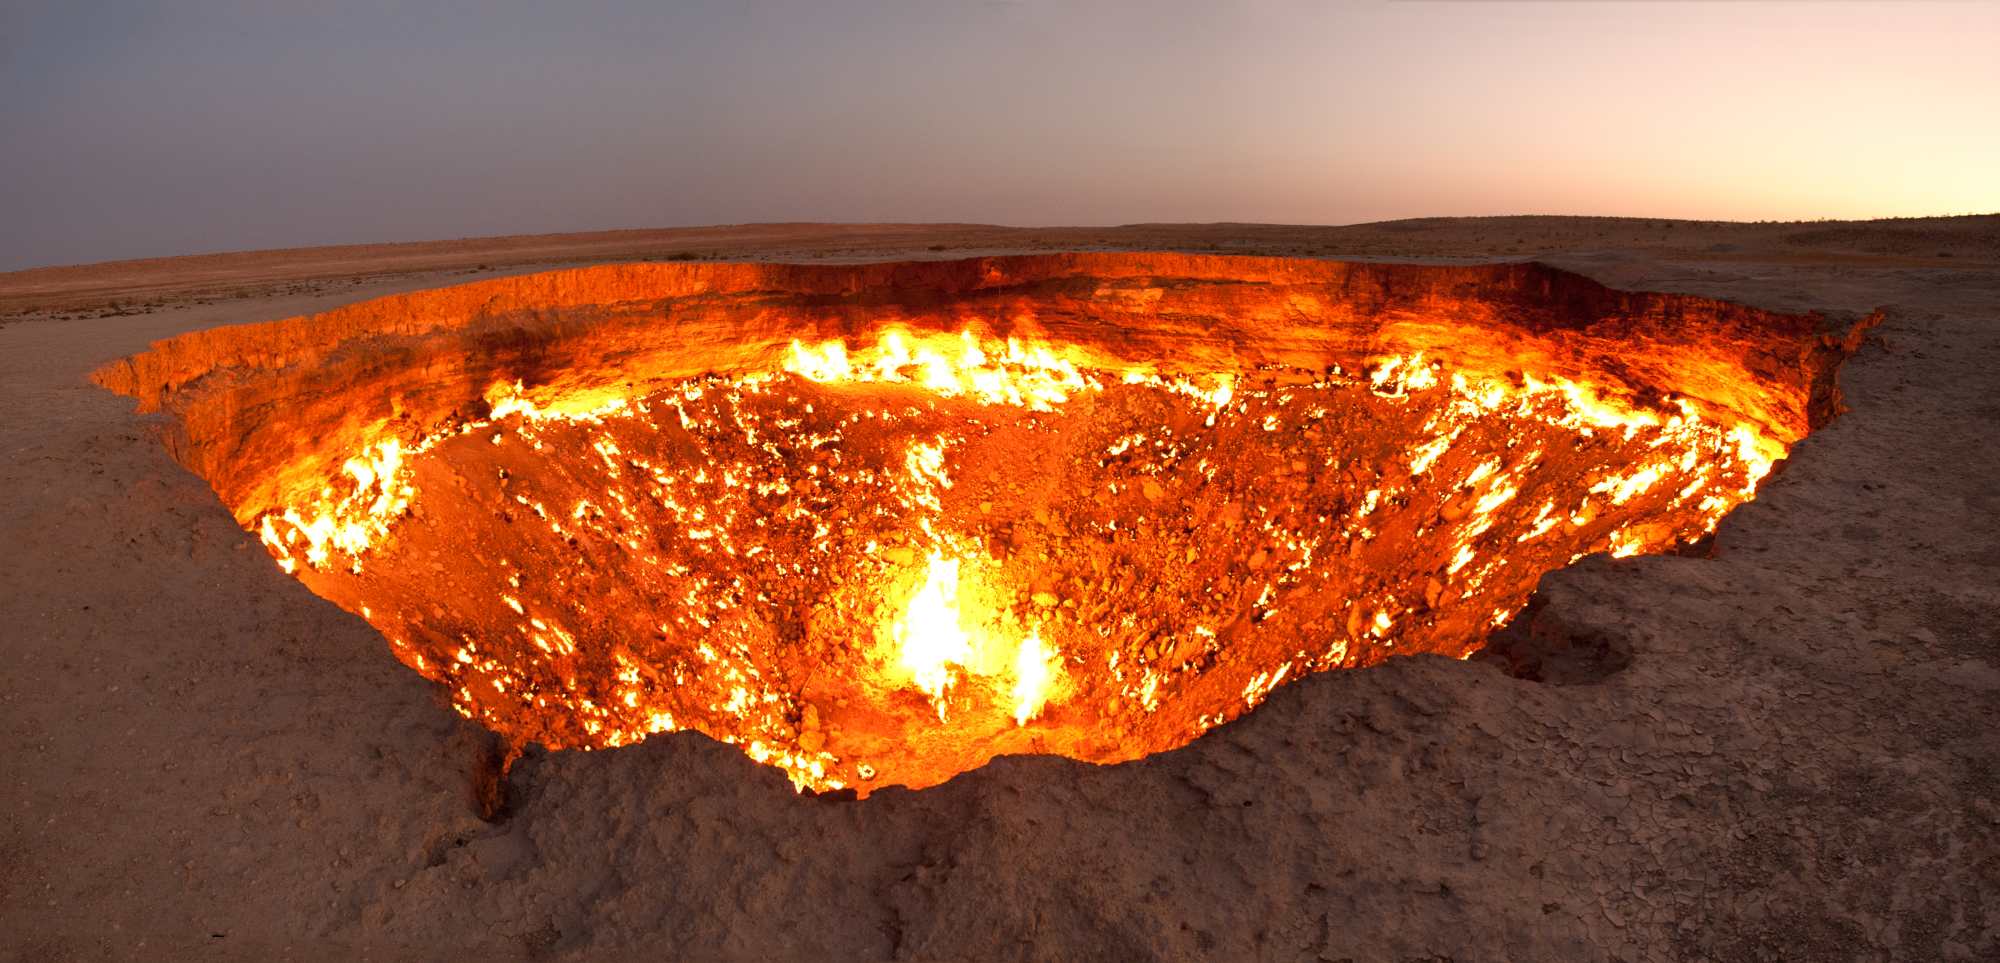 Aparece sin explicación un misterioso cráter que lanza fuego en EE.UU.